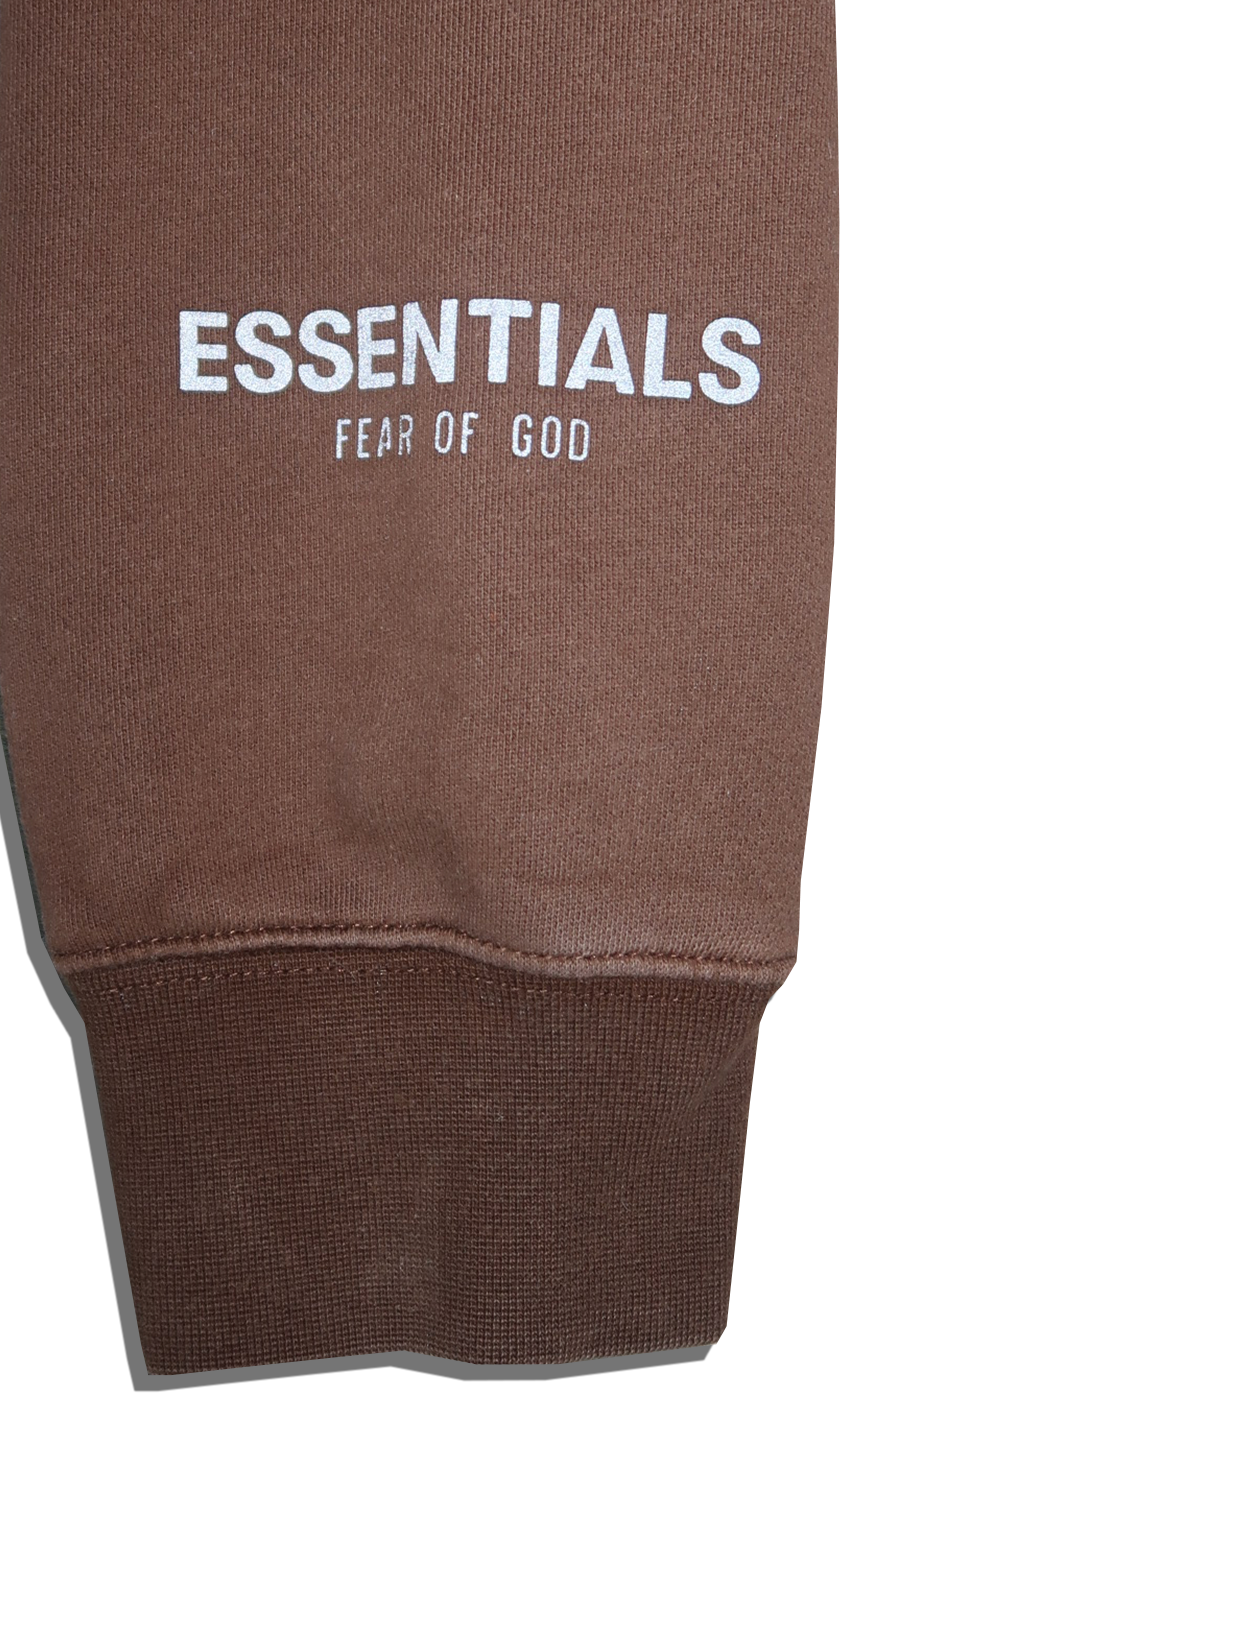 Fear of God Essentials Hoodie – Size Medium